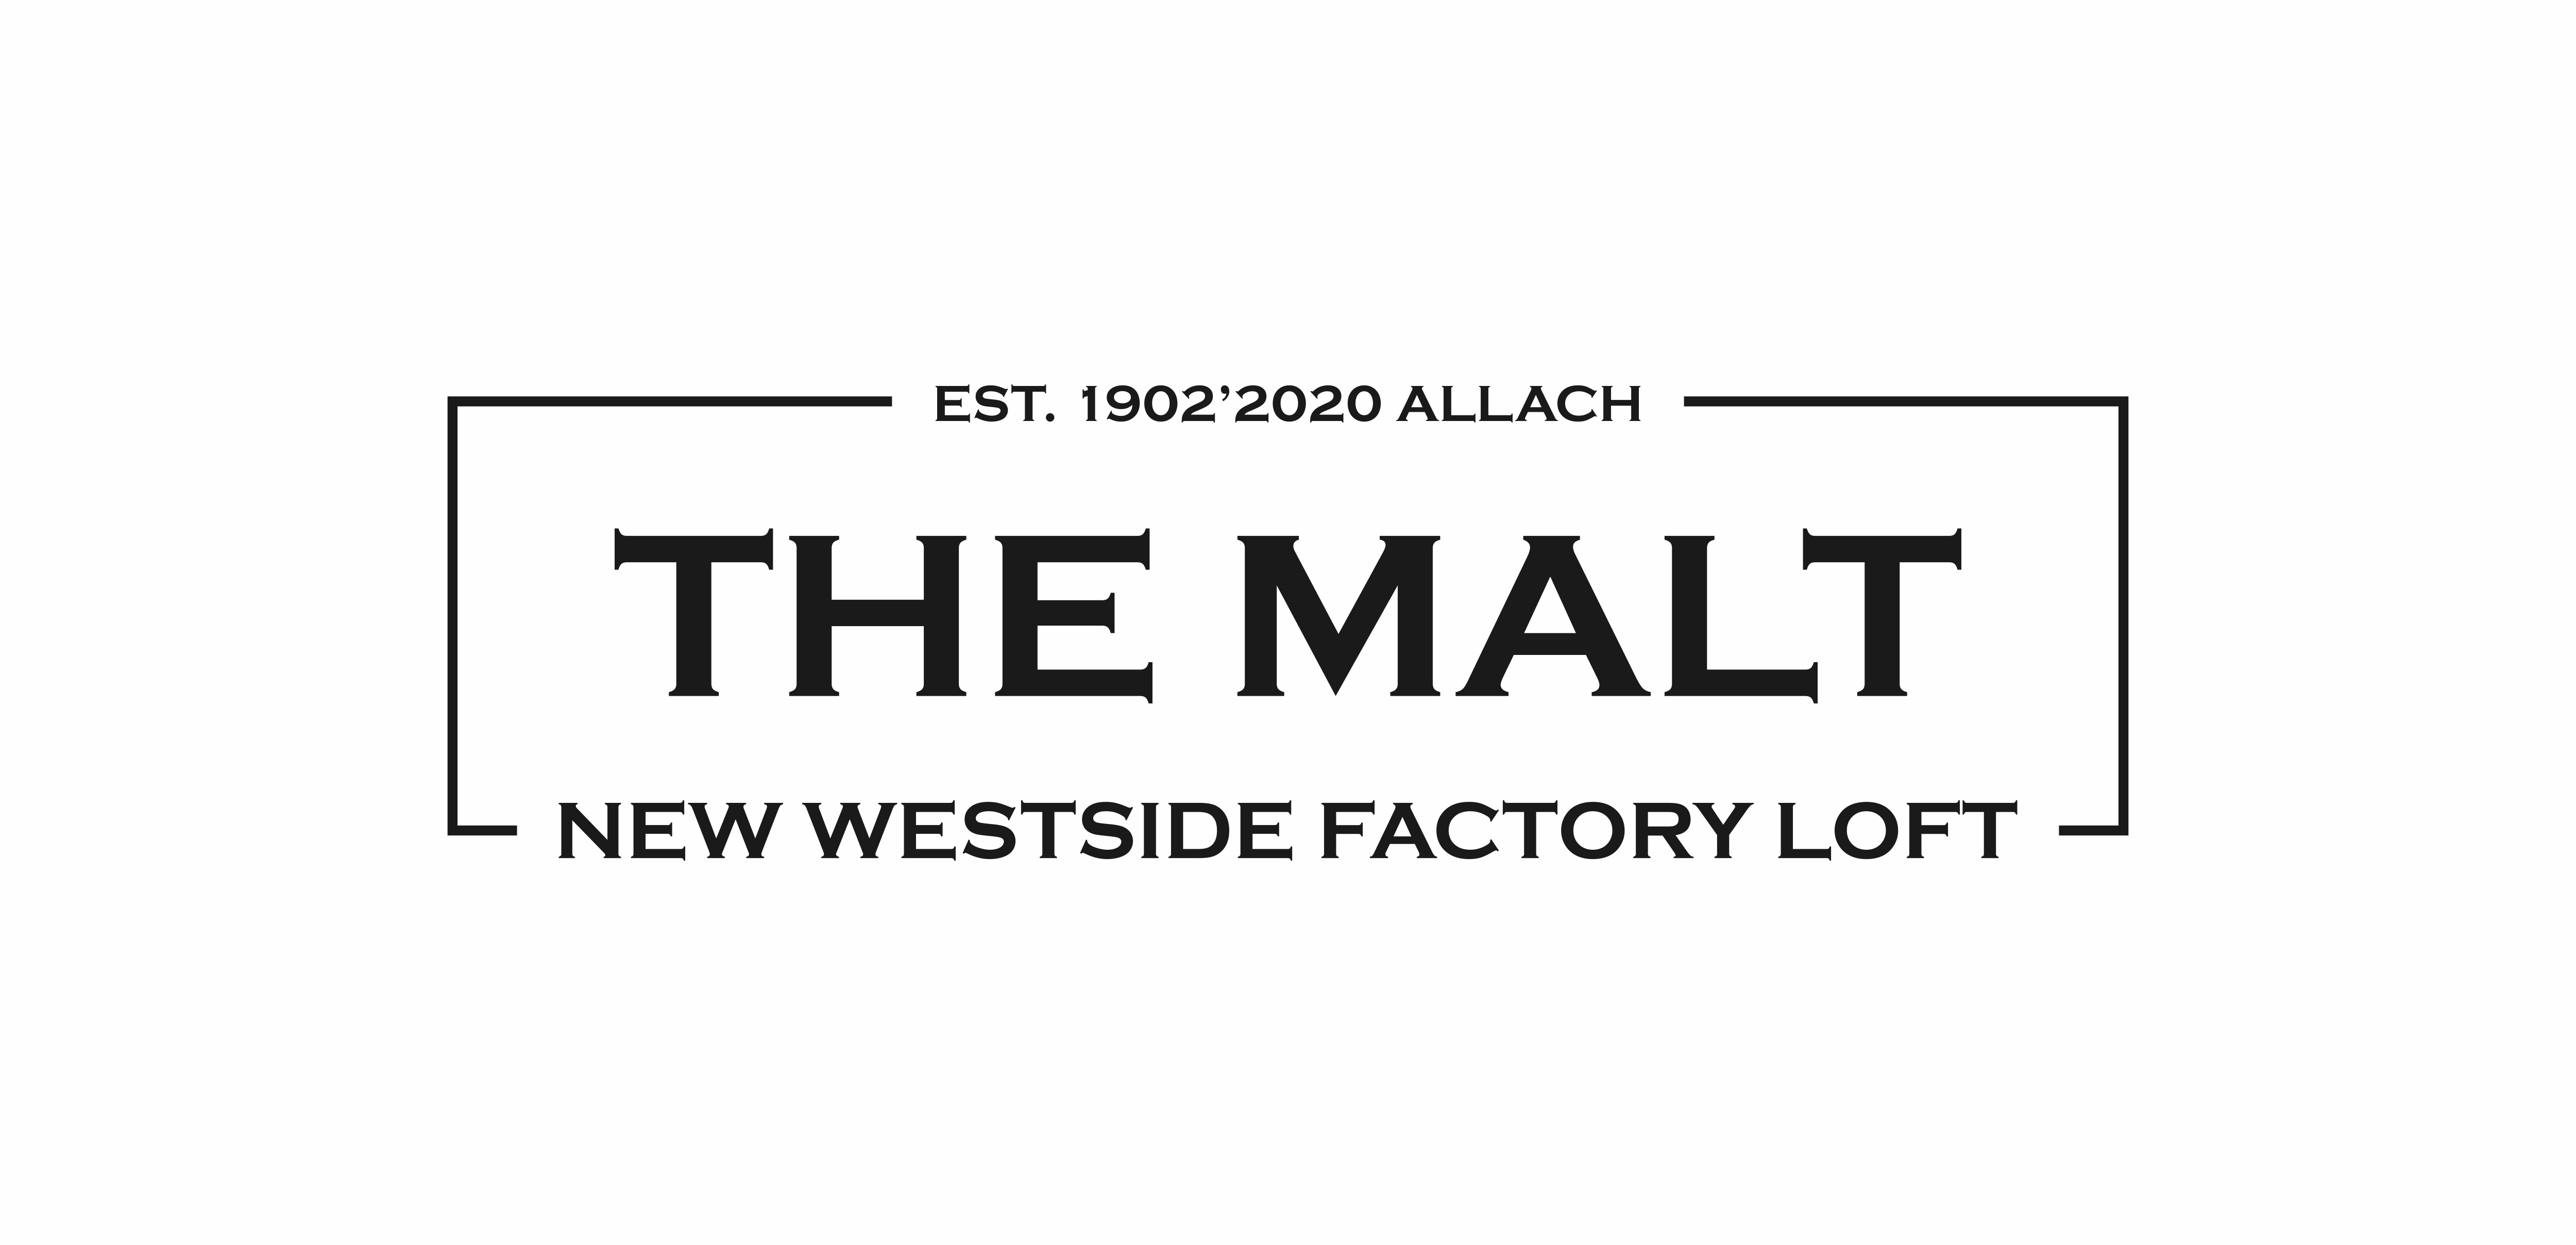 Wir bieten im The MALT <br />
einzigartige Flächen im Factory-Loft-Style <br />
für Münchens Scale Ups. Get inspired !